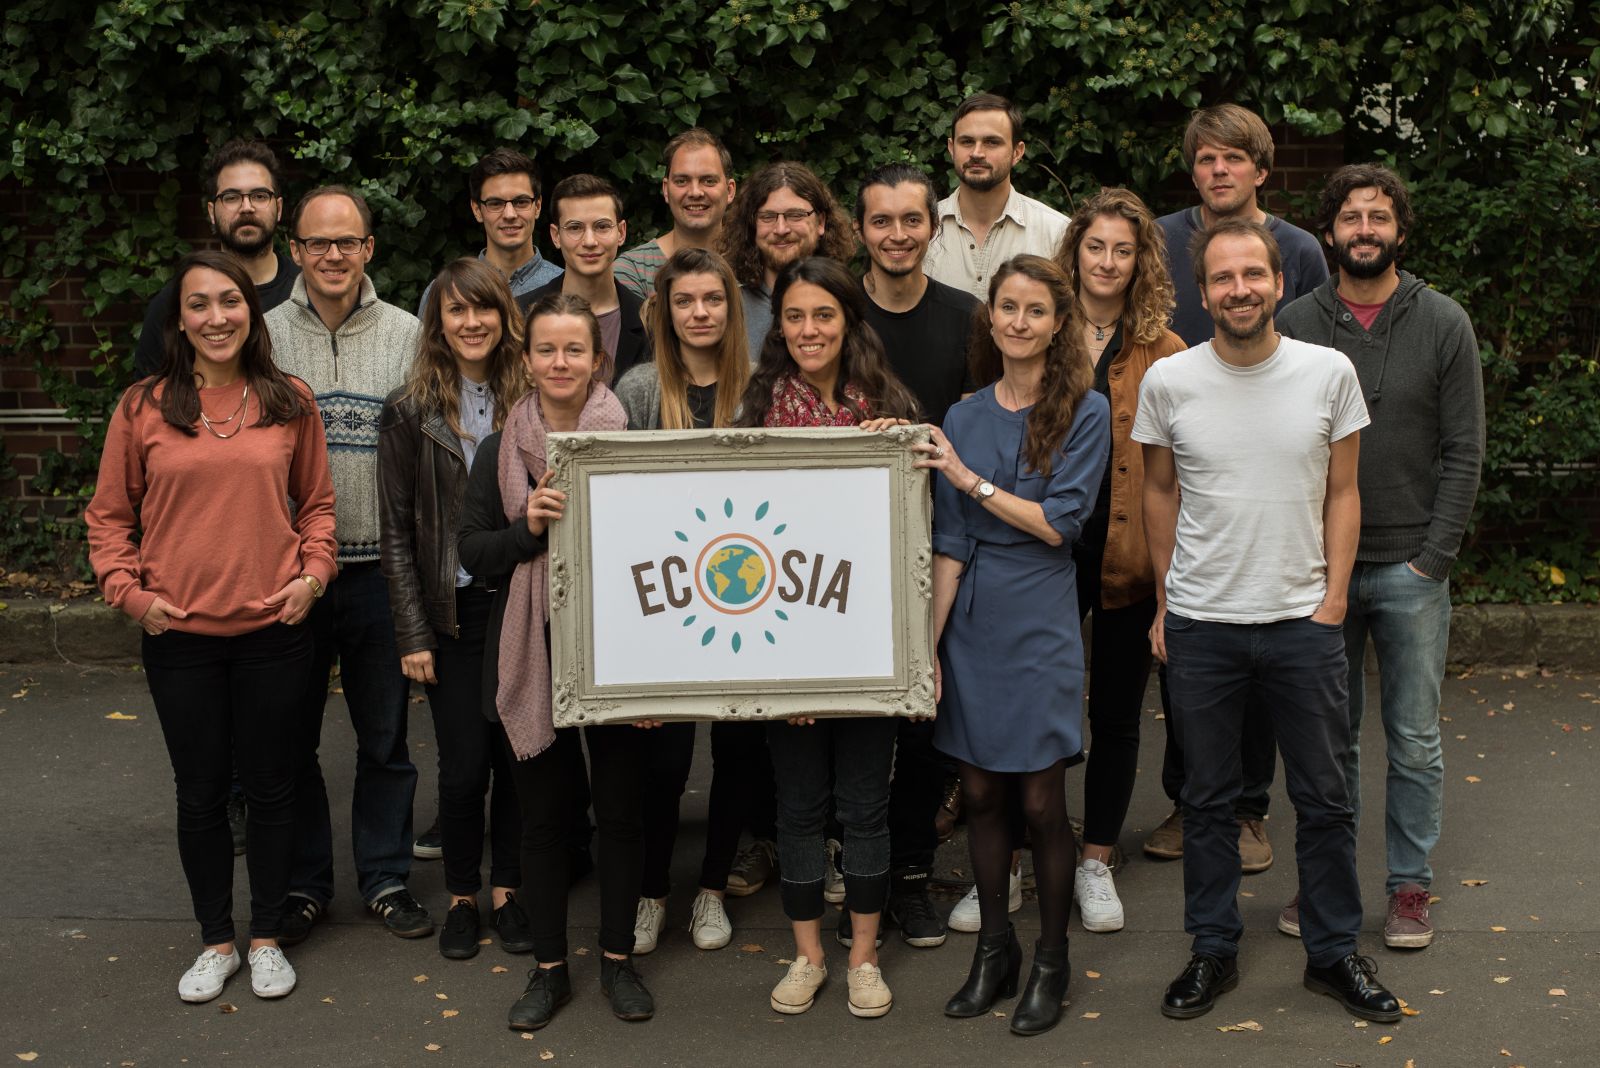 Company Ecosia